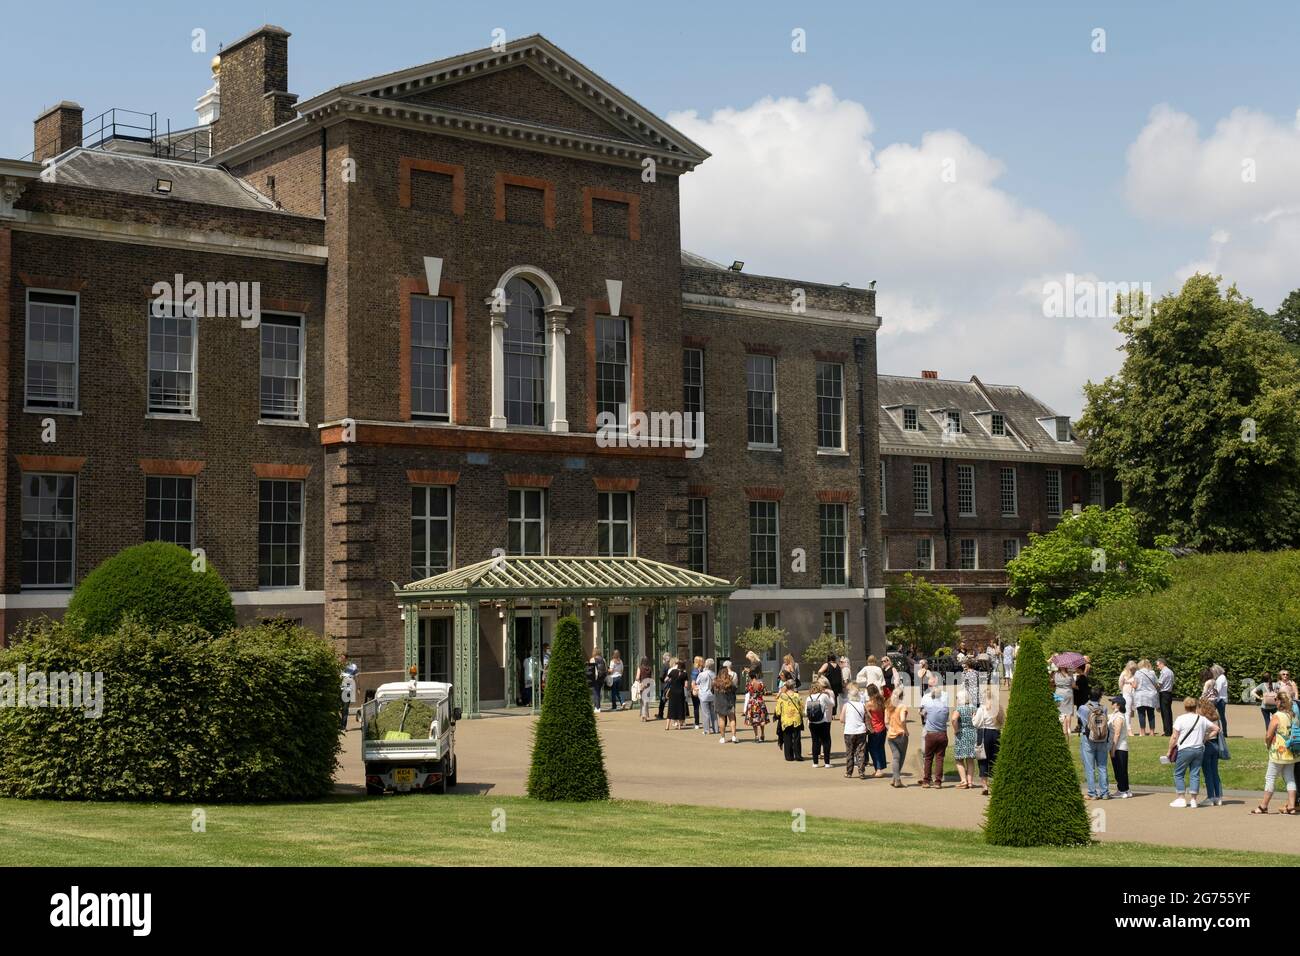 Am Tag nach dem 60. Geburtstag von Prinzessin Diana besuchen die Menschen am 2. Juli 2021 den Kensington Palace im Hyde Park in London, Großbritannien. Diana, Kensington Palace war die ehemalige Residenz der Prinzessin von Wales wurde nach ihrem tragischen Tod als die Volksprinzessin bekannt. Stockfoto